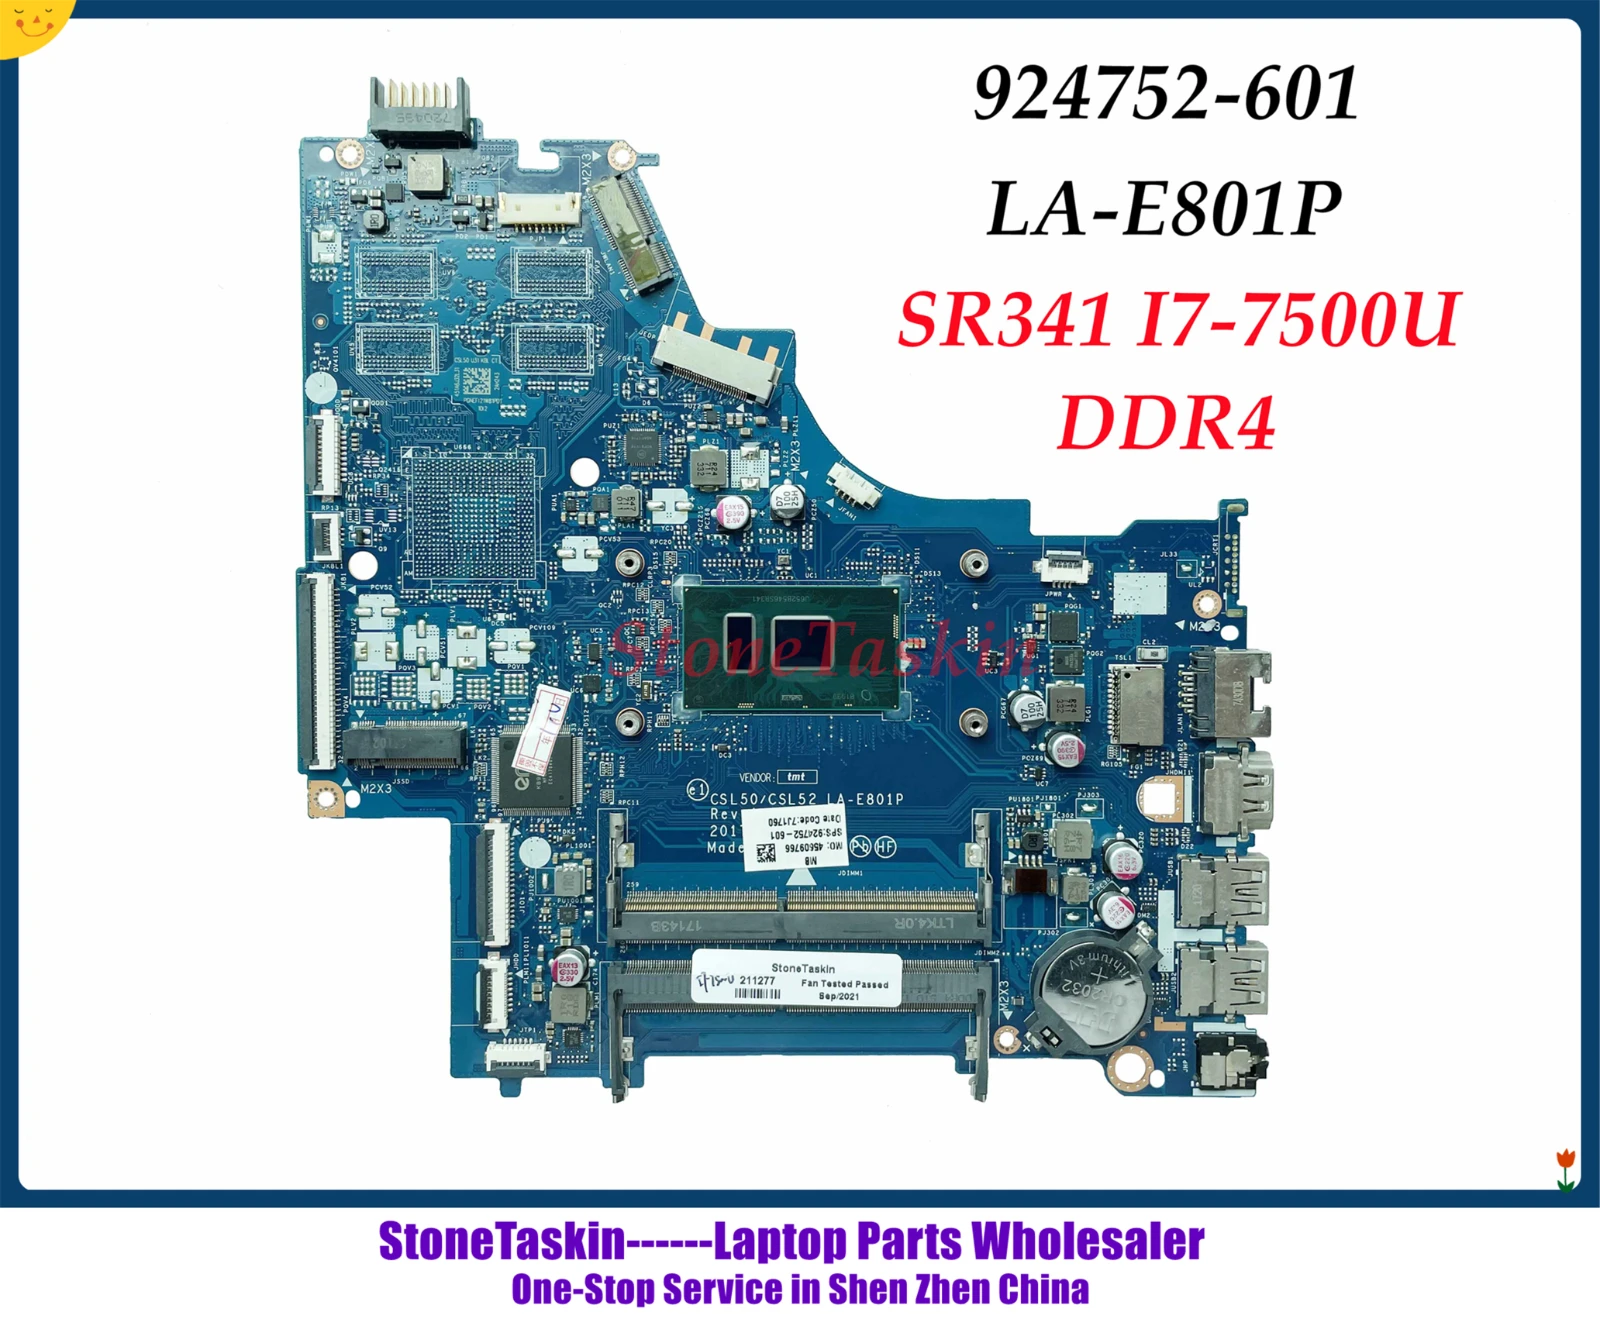 StoneTaskin CKL50 LA-E801P HP Pavilion 15-BS Klēpjdators Mātesplatē 924752-601 924752-001 SR341 i7-7500U CPU DDR4 100% Pārbaudīta0